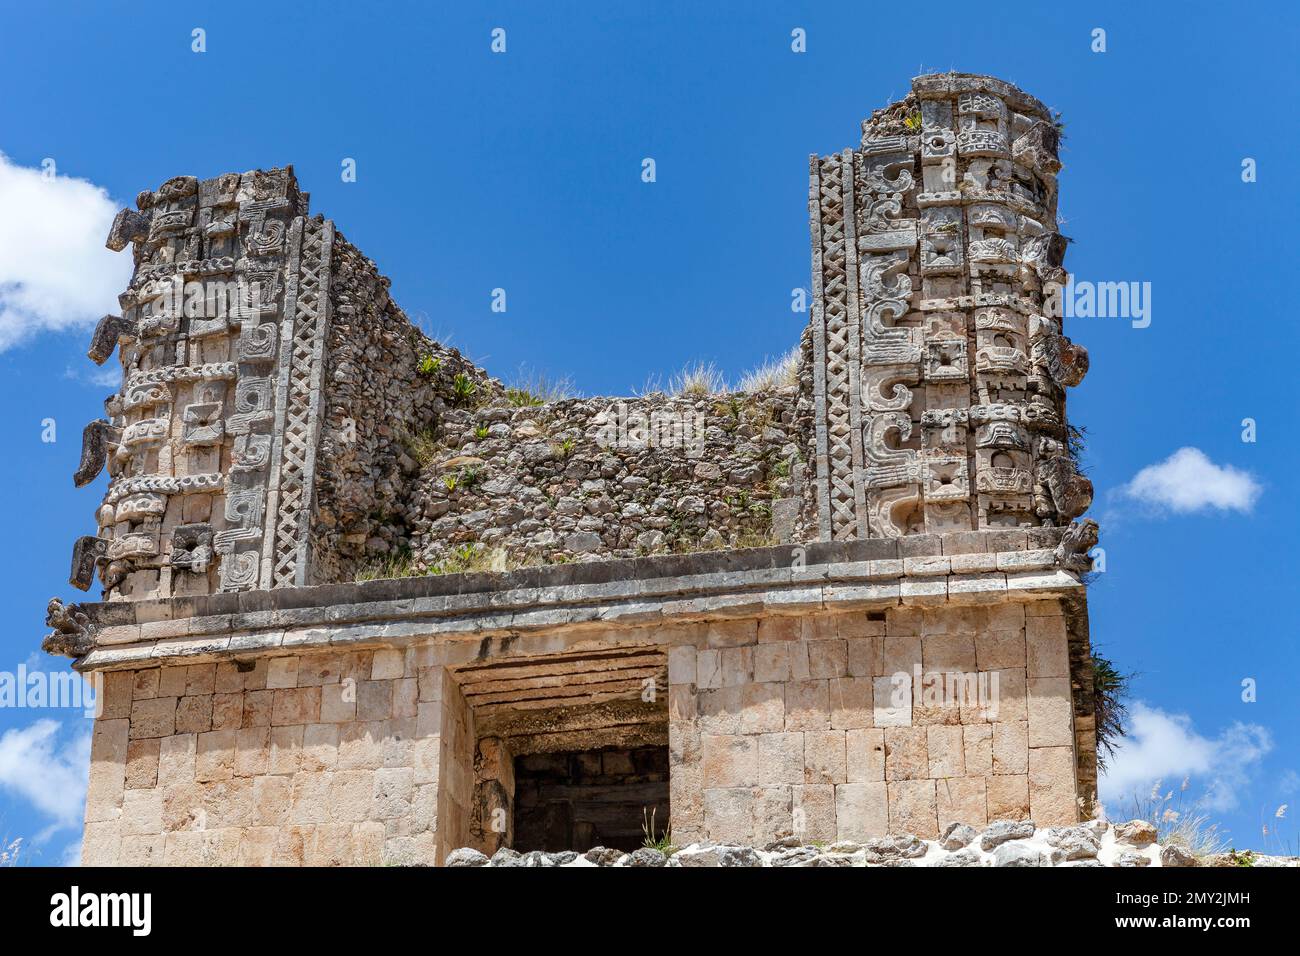 Dettaglio di uno dei palazzi del Quadrilatero dei Nunnery a Uxmal nello Yucatan Foto Stock